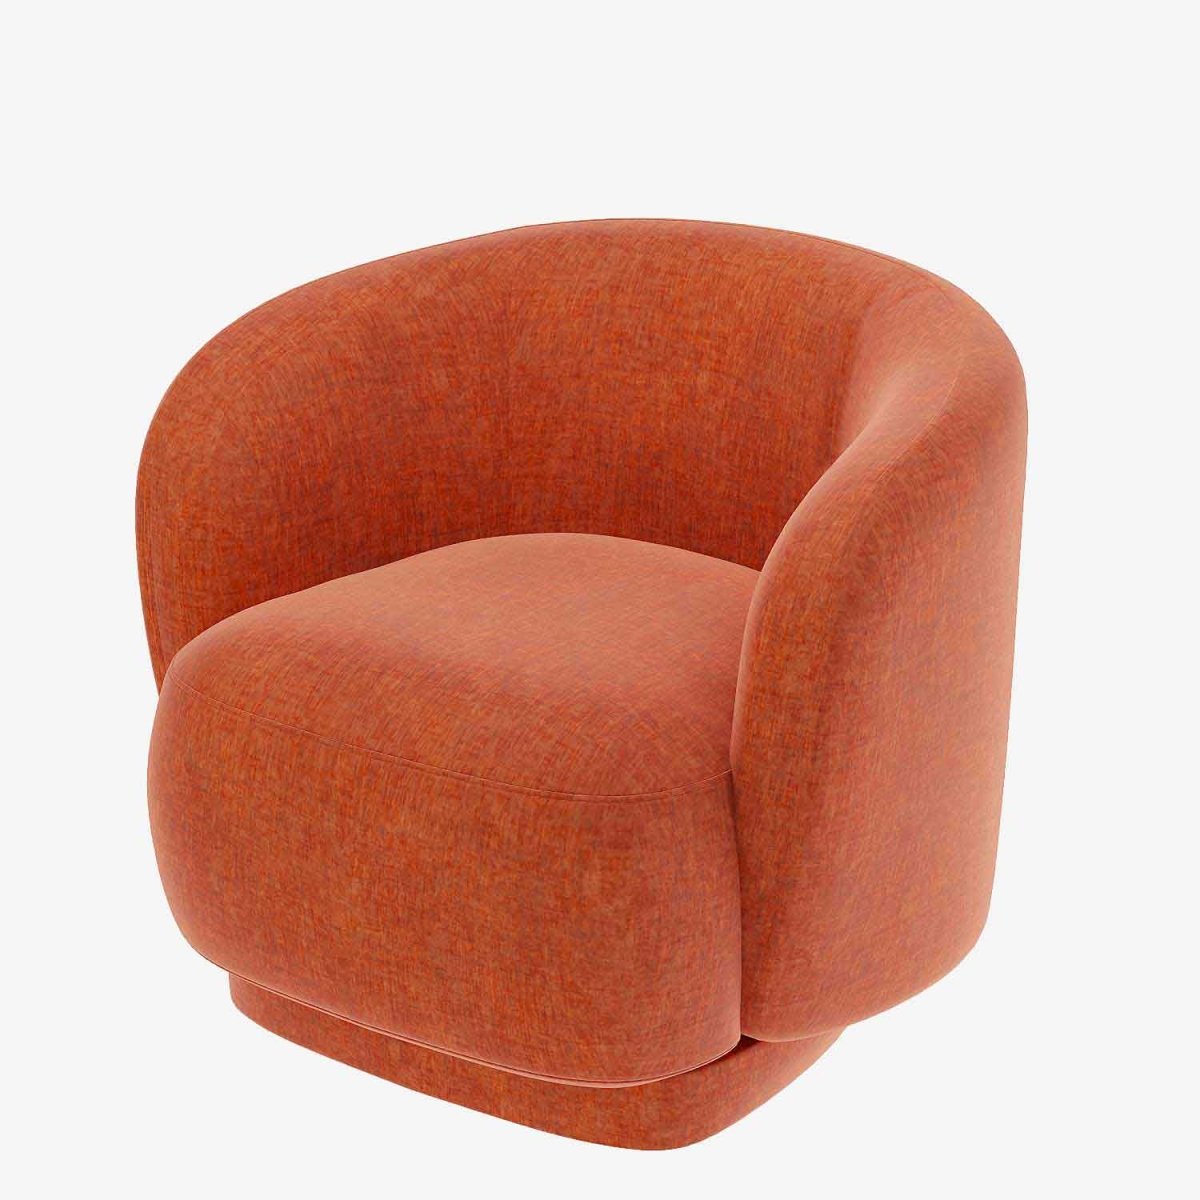 Fauteuil en velours vintage orange corail -  Potiron Paris, la satisfaction du fauteuil design et confortable pas cher